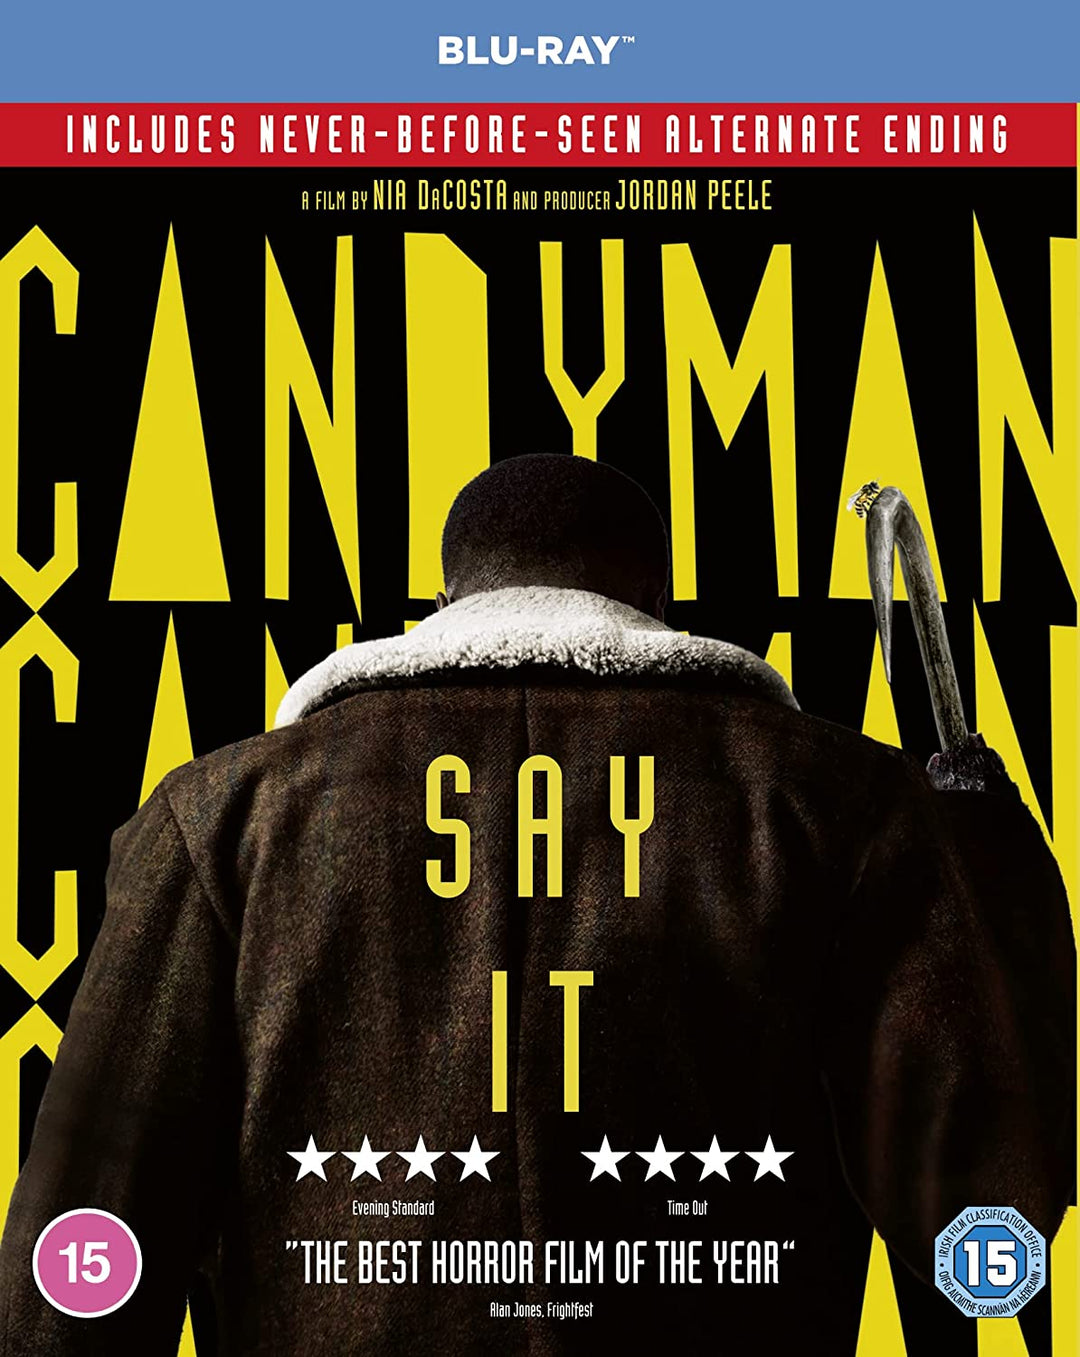 Candyman [Blu-ray] [2021] [Region Free] - Horror/Thriller [Blu-ray]